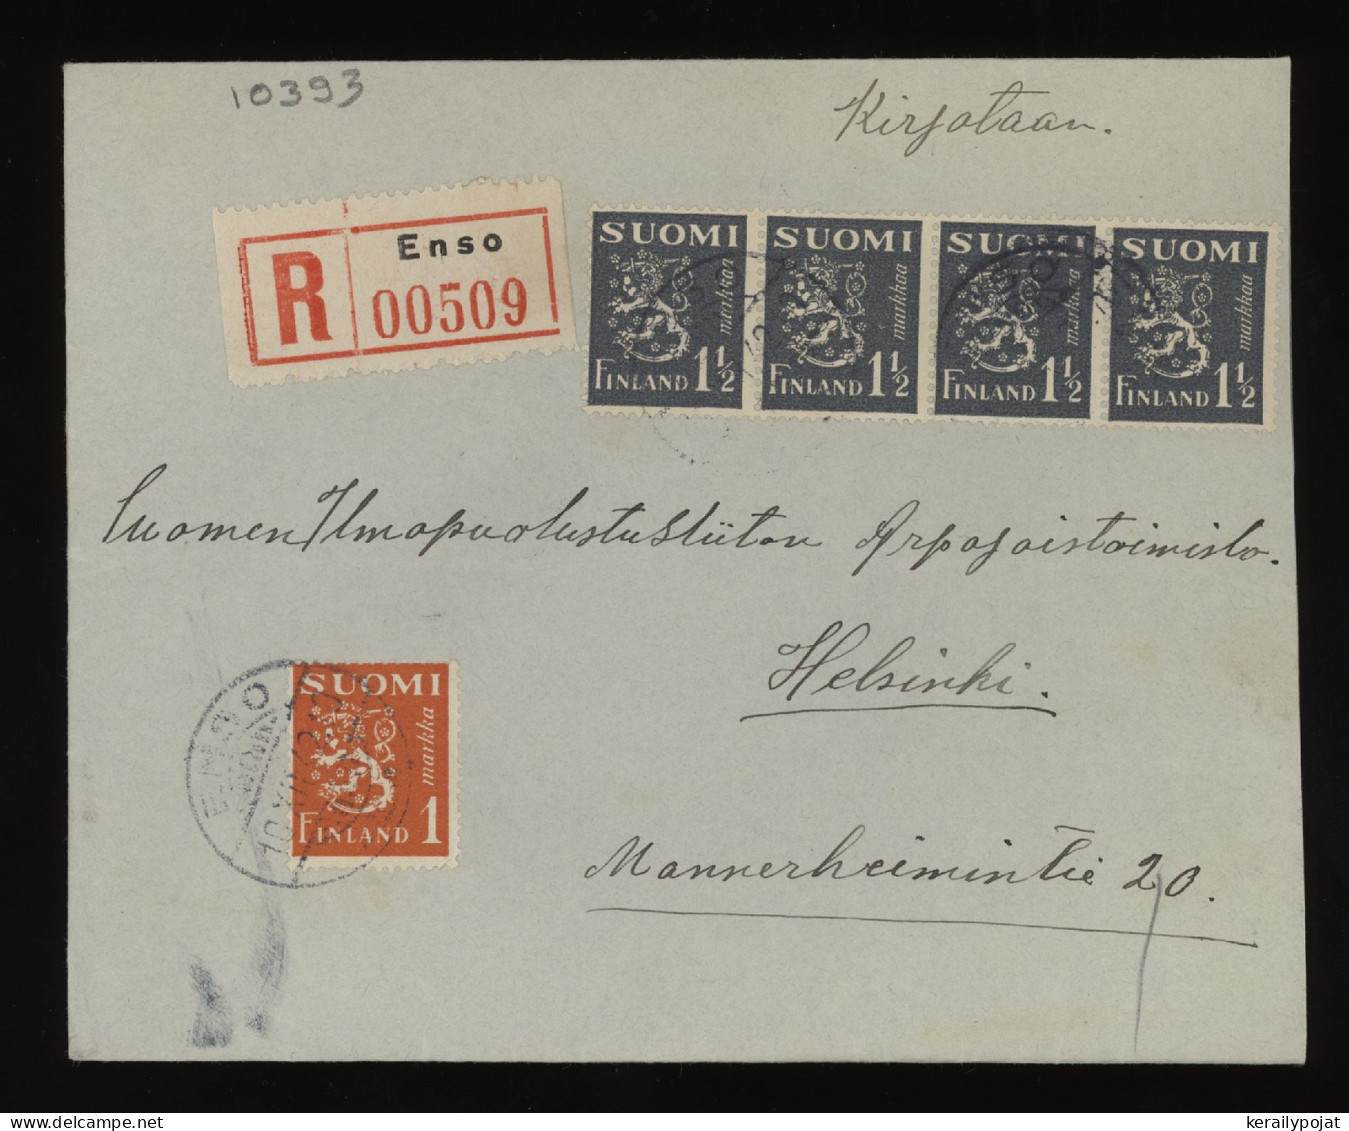 Finland 1942 Enso Registered Cover__(10393) - Briefe U. Dokumente